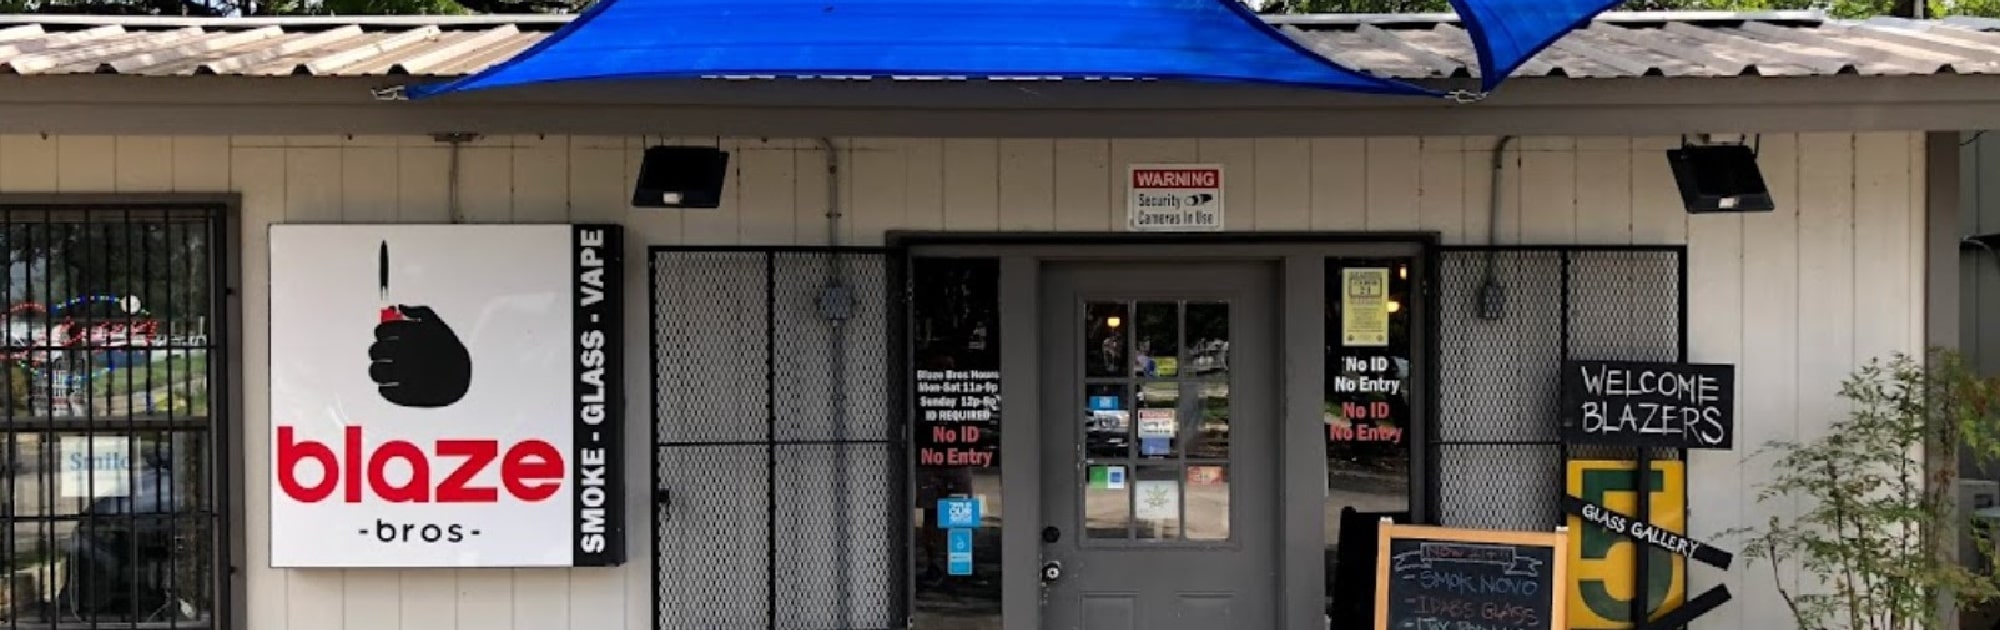 image of blaze bros smoke shop in san antonio texas